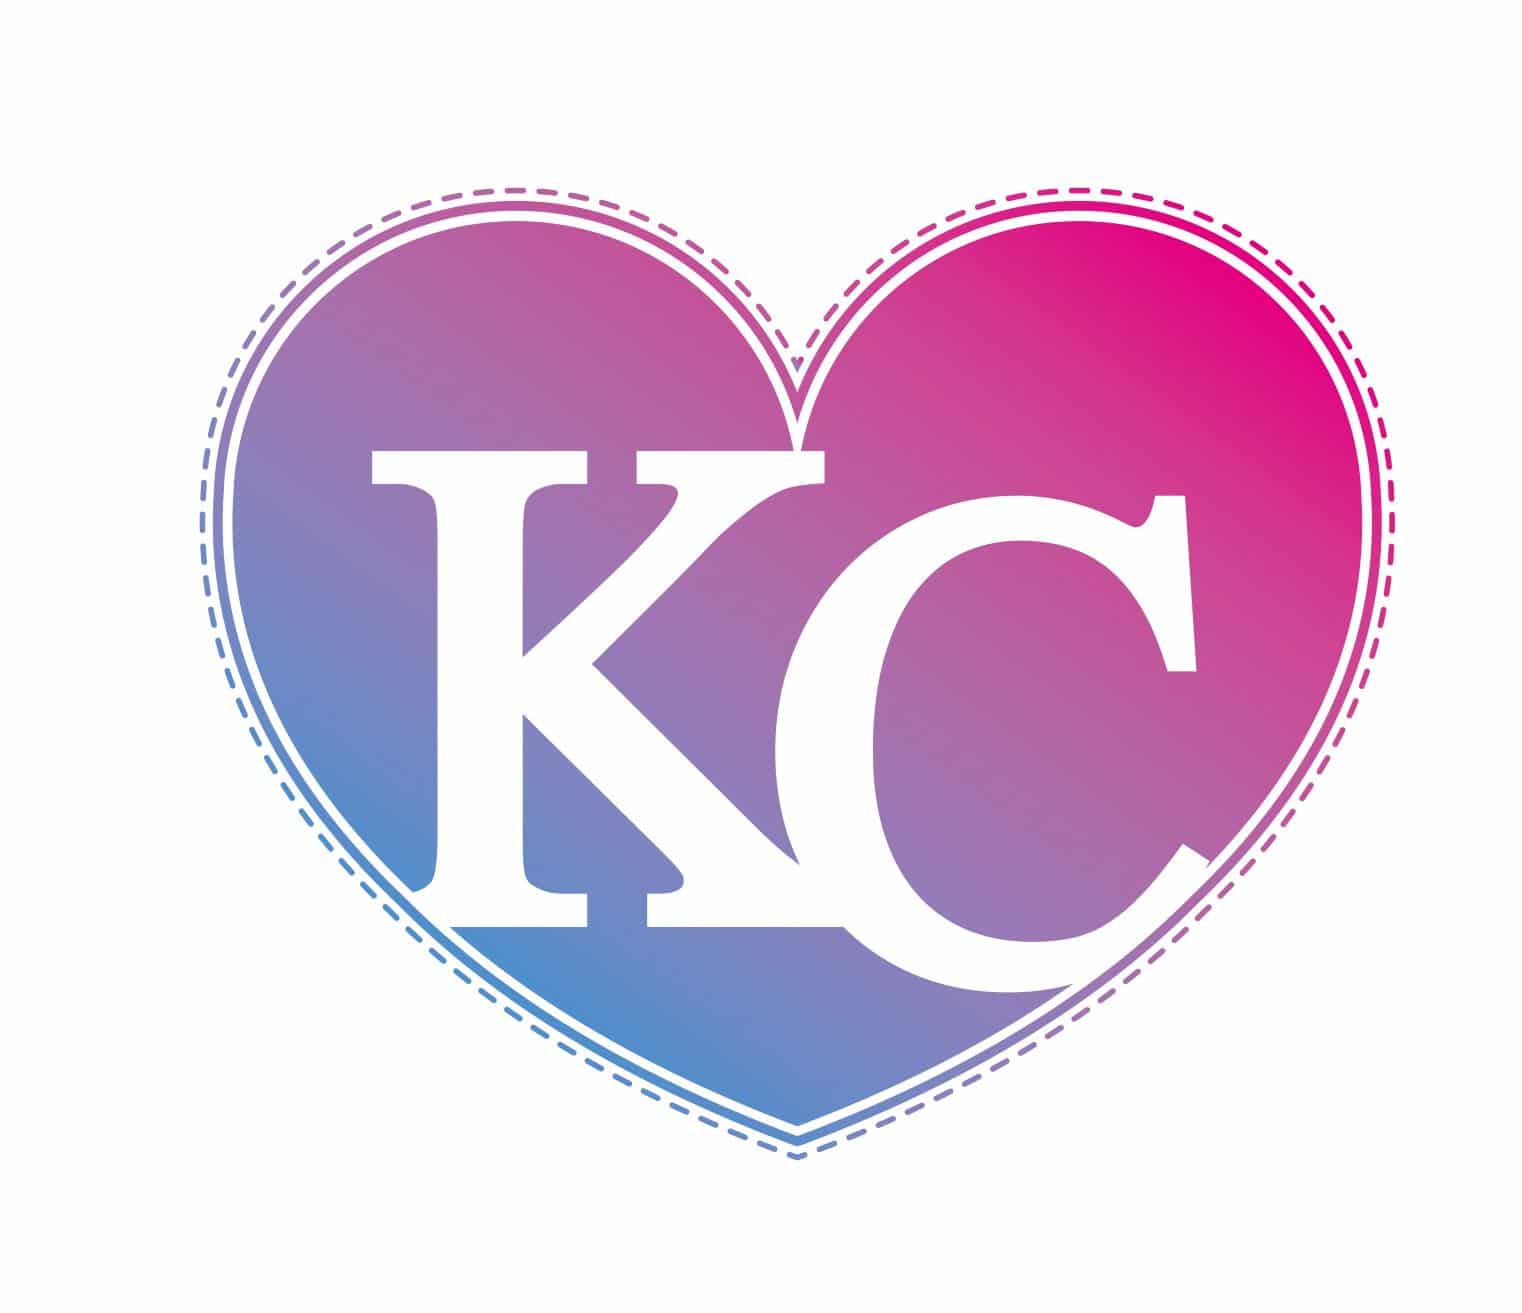 Top 5 Family-Friendly Things to Do in KC - KC Kids Fun